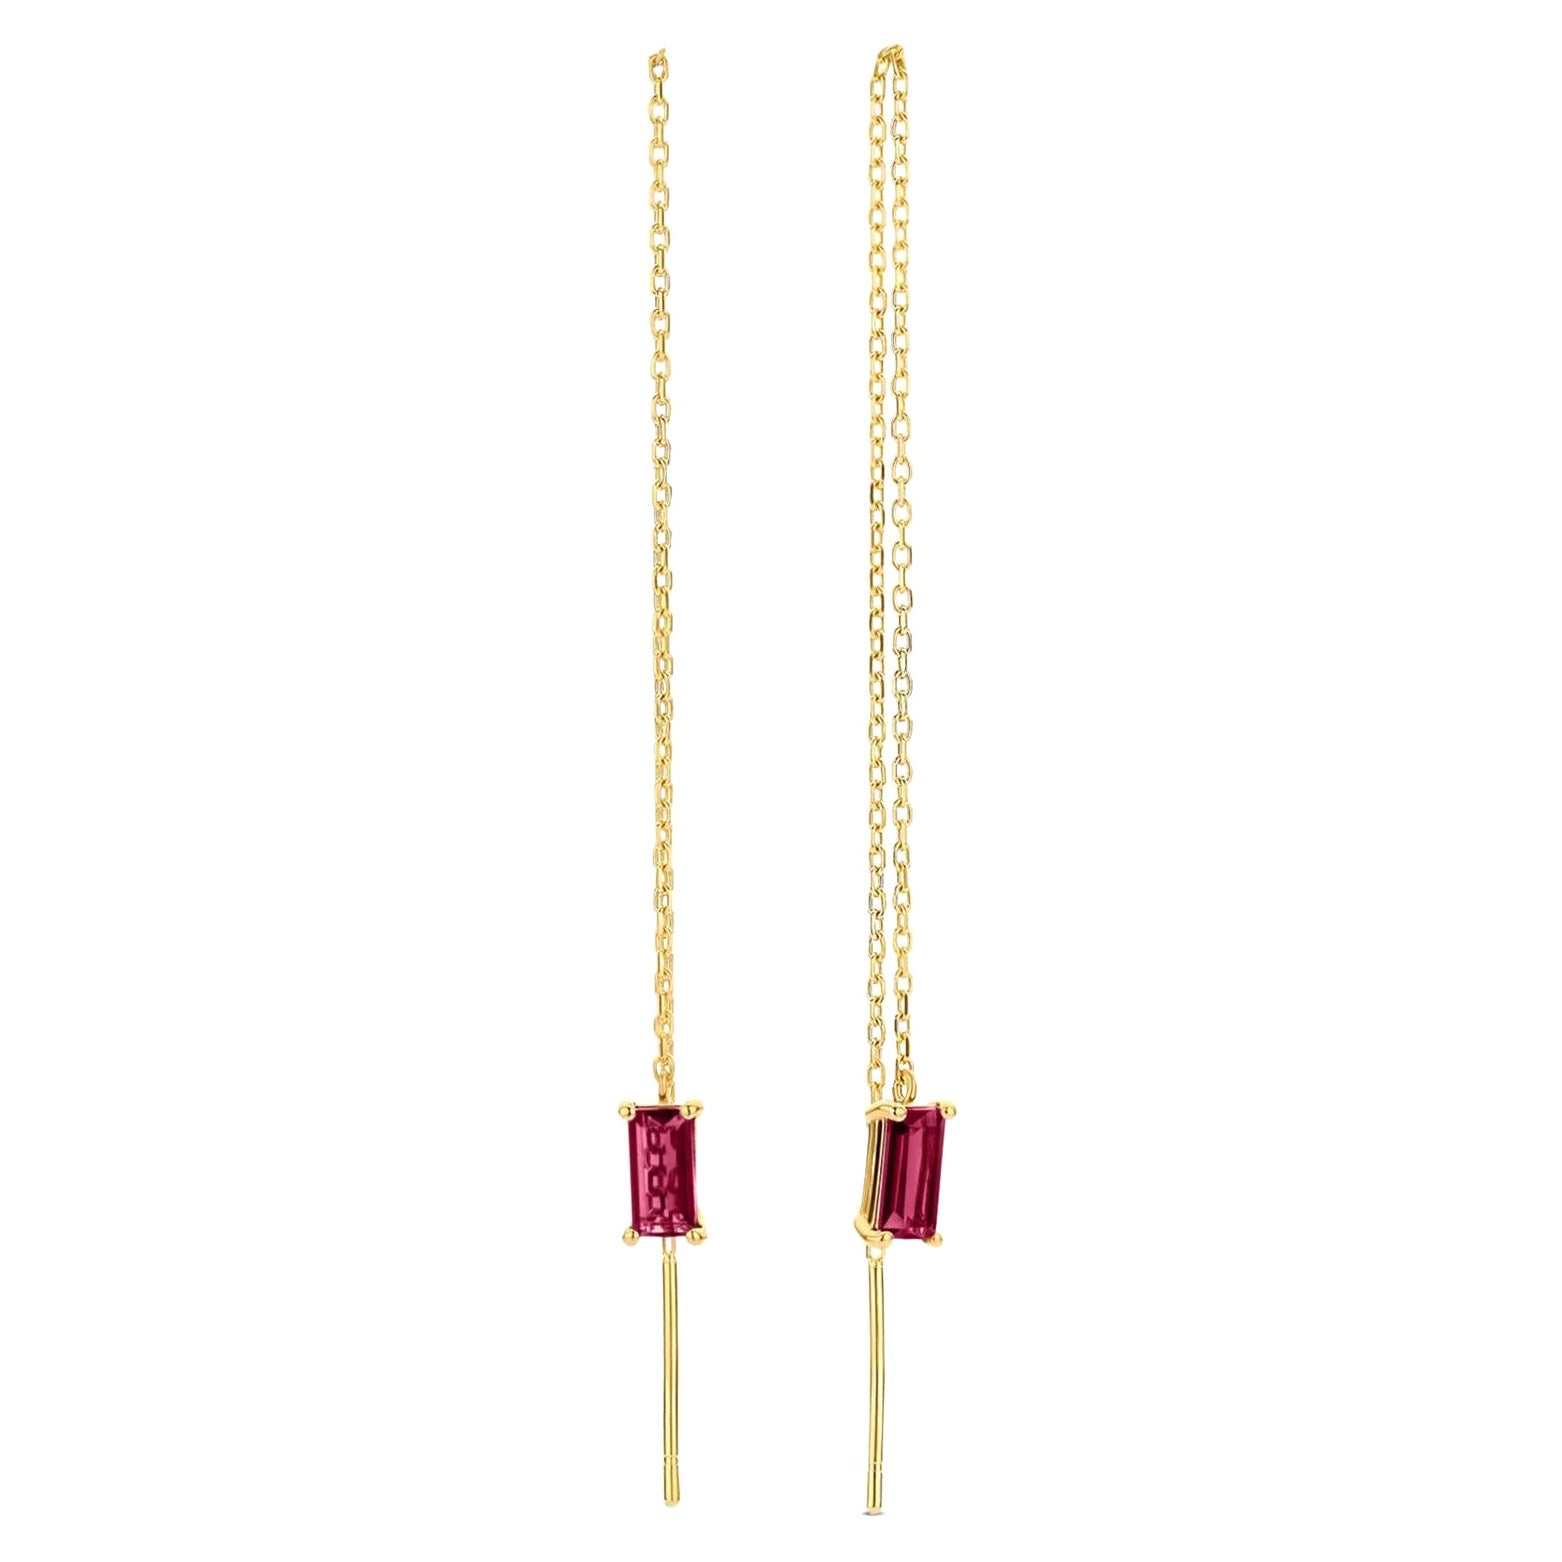 14k Solid Gold Drop Earrings with Garnet, Chain Gold Earrings